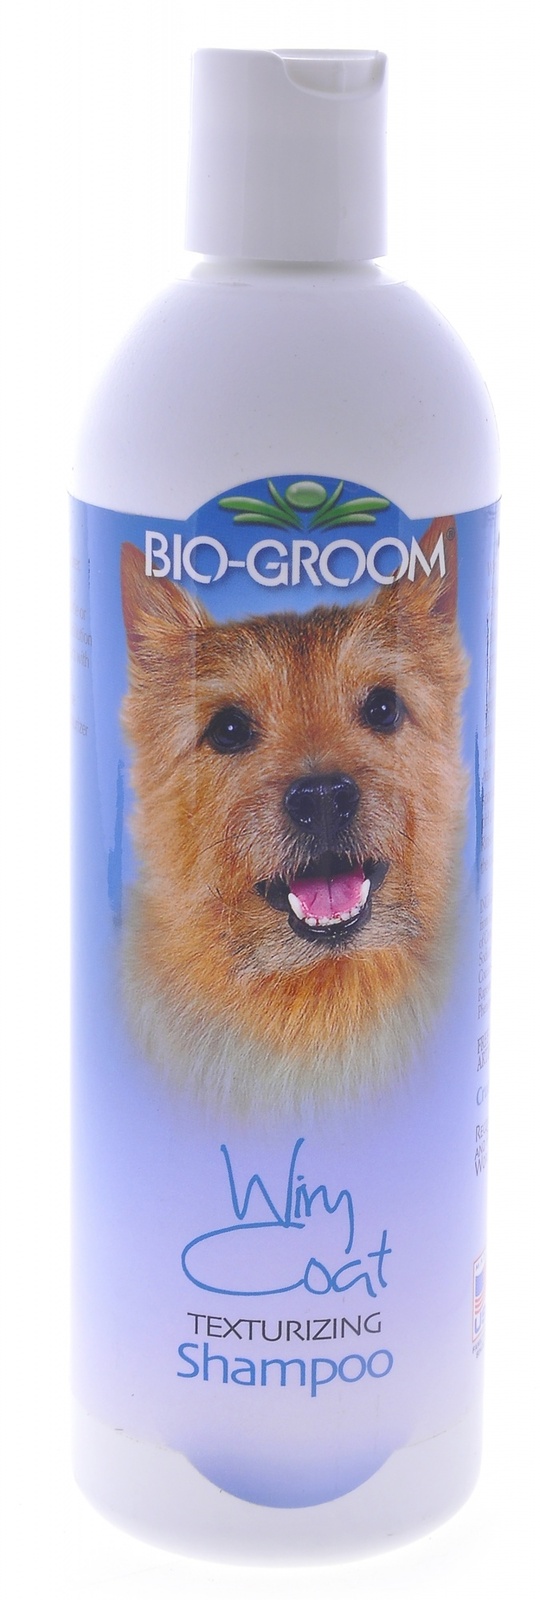 Biogroom Biogroom шампунь для жесткой шерсти, концентрат 1:4, 1.8 литра готового шампуня (355 г) biogroom шампунь для жесткой шерсти 1 к 4 wiry coat shampoo